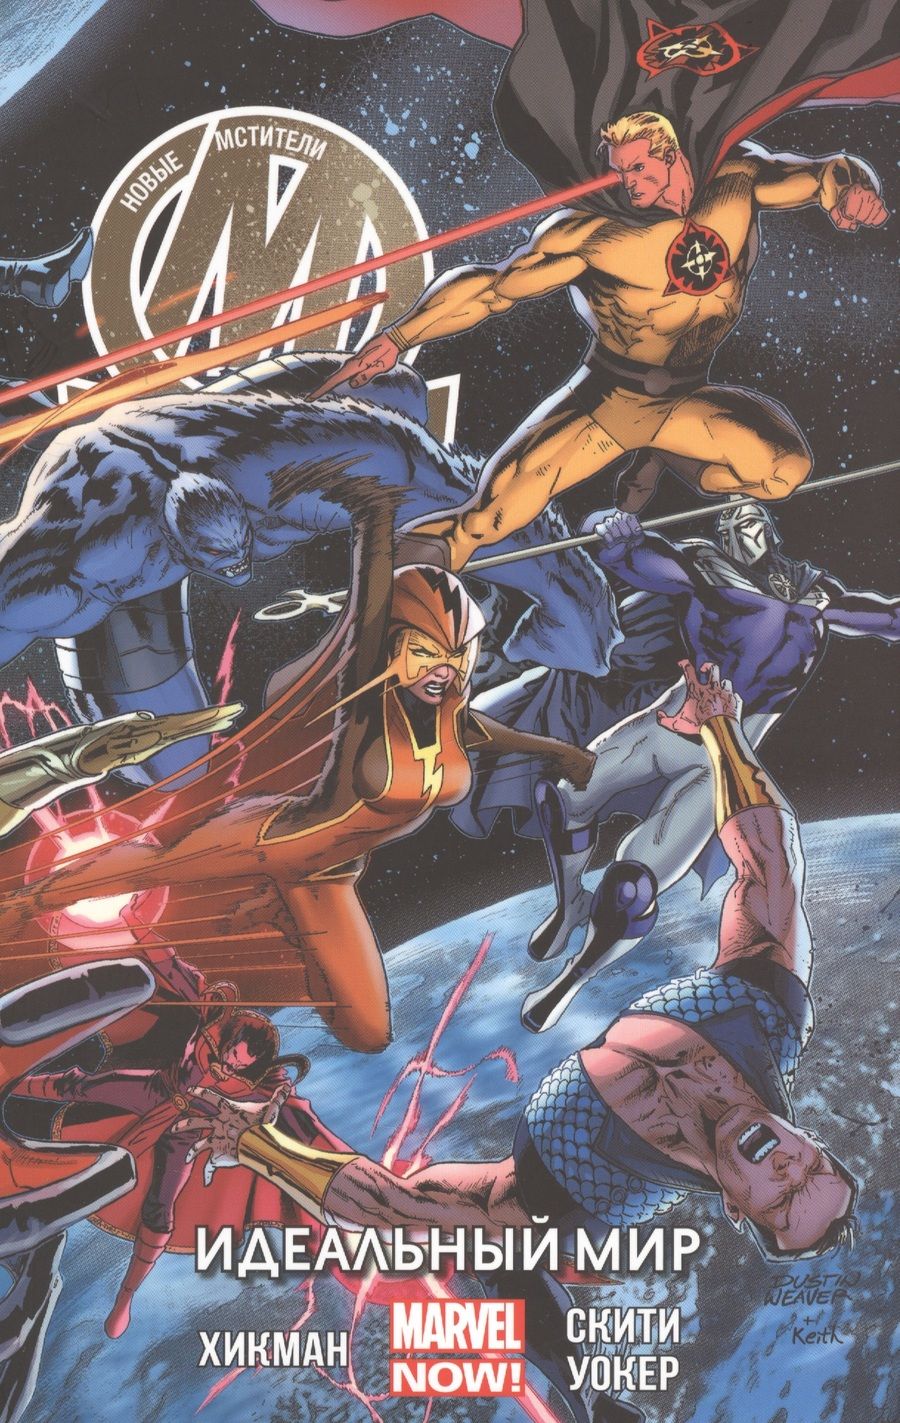 Обложка книги "Джонатан Хикман: Новые Мстители. Идеальный мир. Том 3"